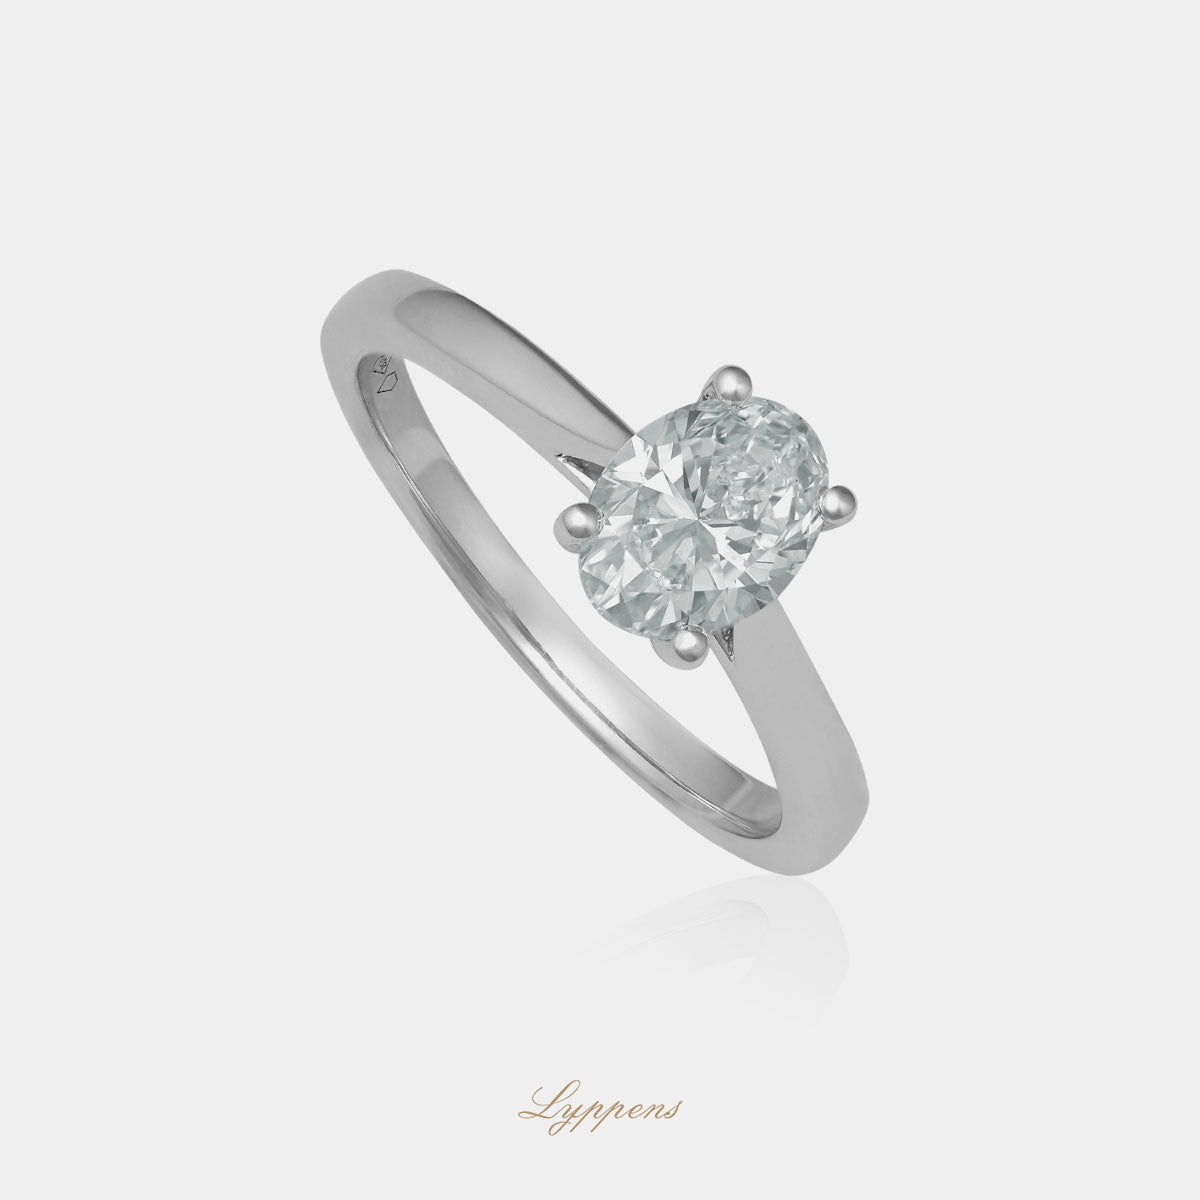 Staande witgouden solitair verlovingsring, deze ring is in het midden gezet met een ovaal geslepen diamant